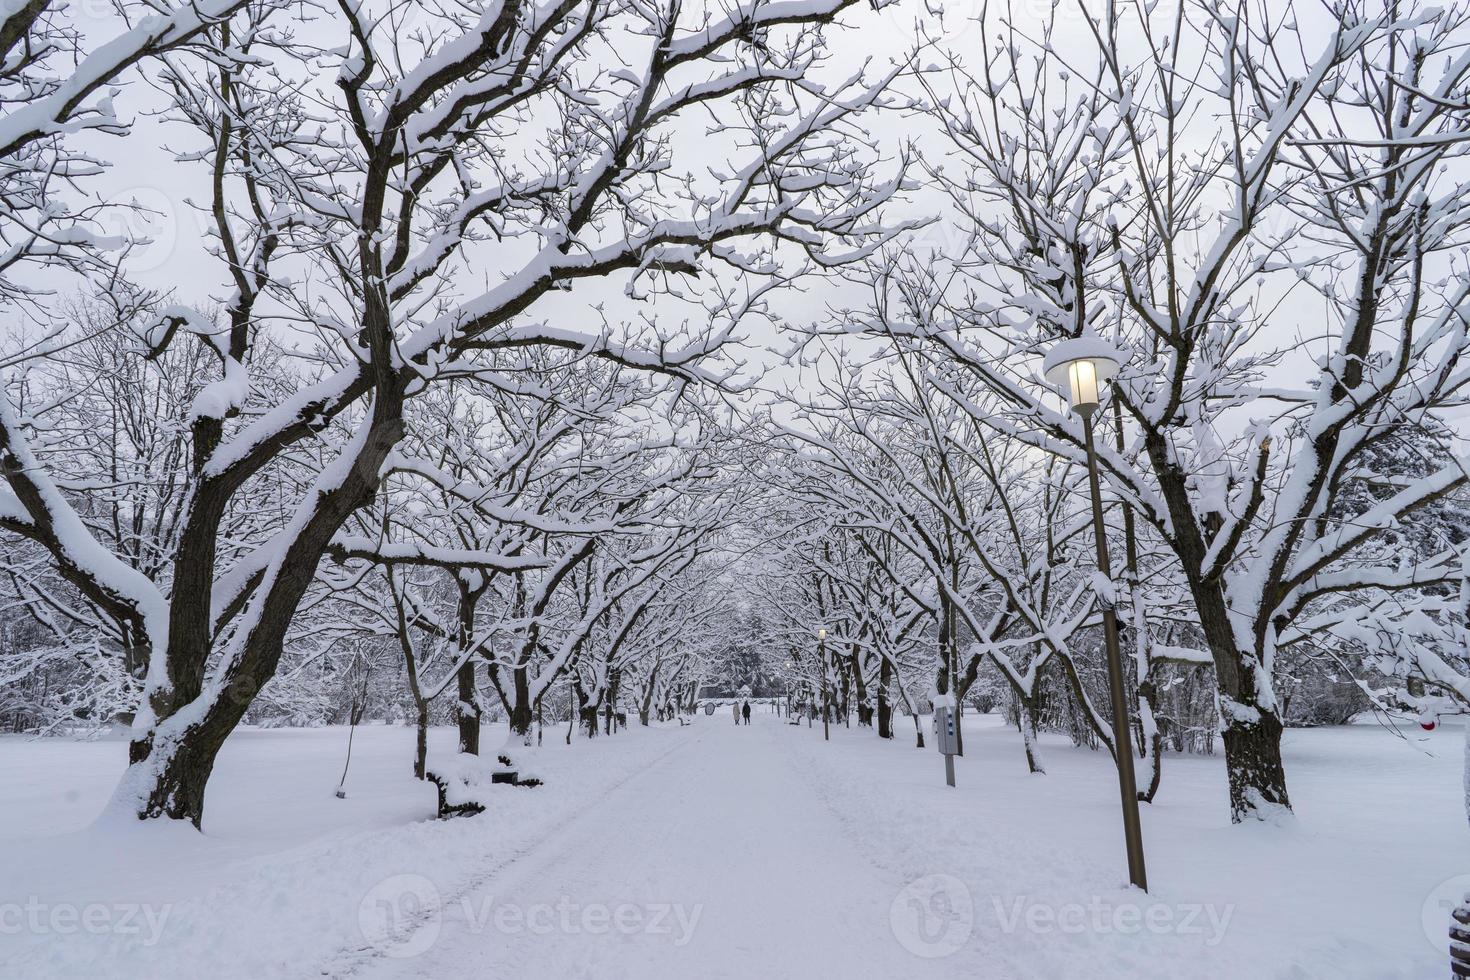 copas de árboles cubiertas de nieve en el jardín botánico de invierno, minsk foto